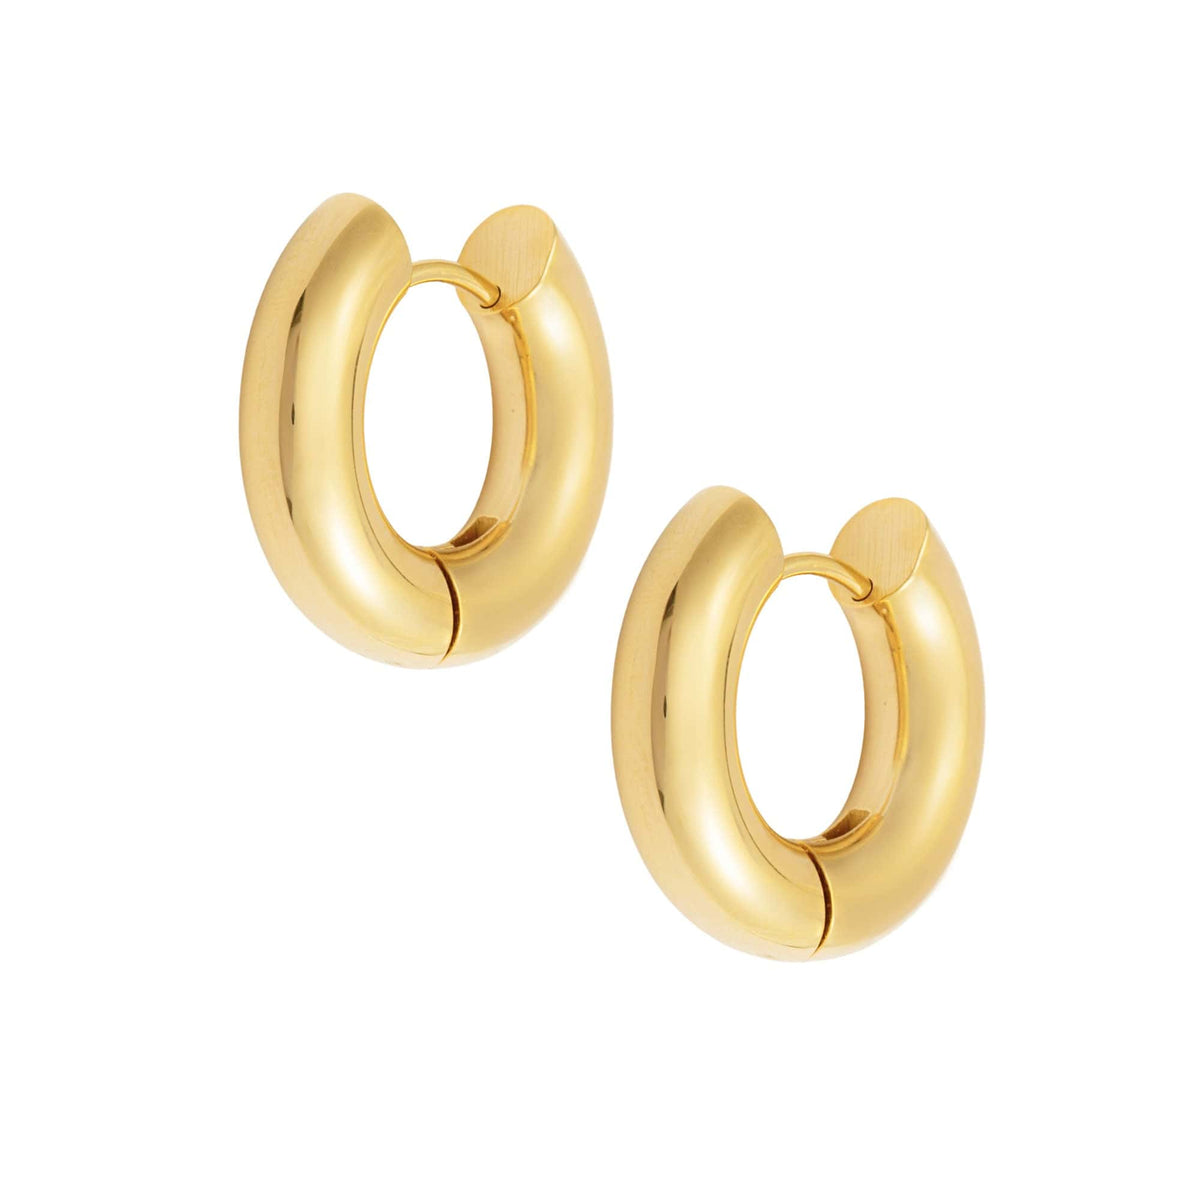 BohoMoon Stainless Steel Tube Hoop Earrings Gold